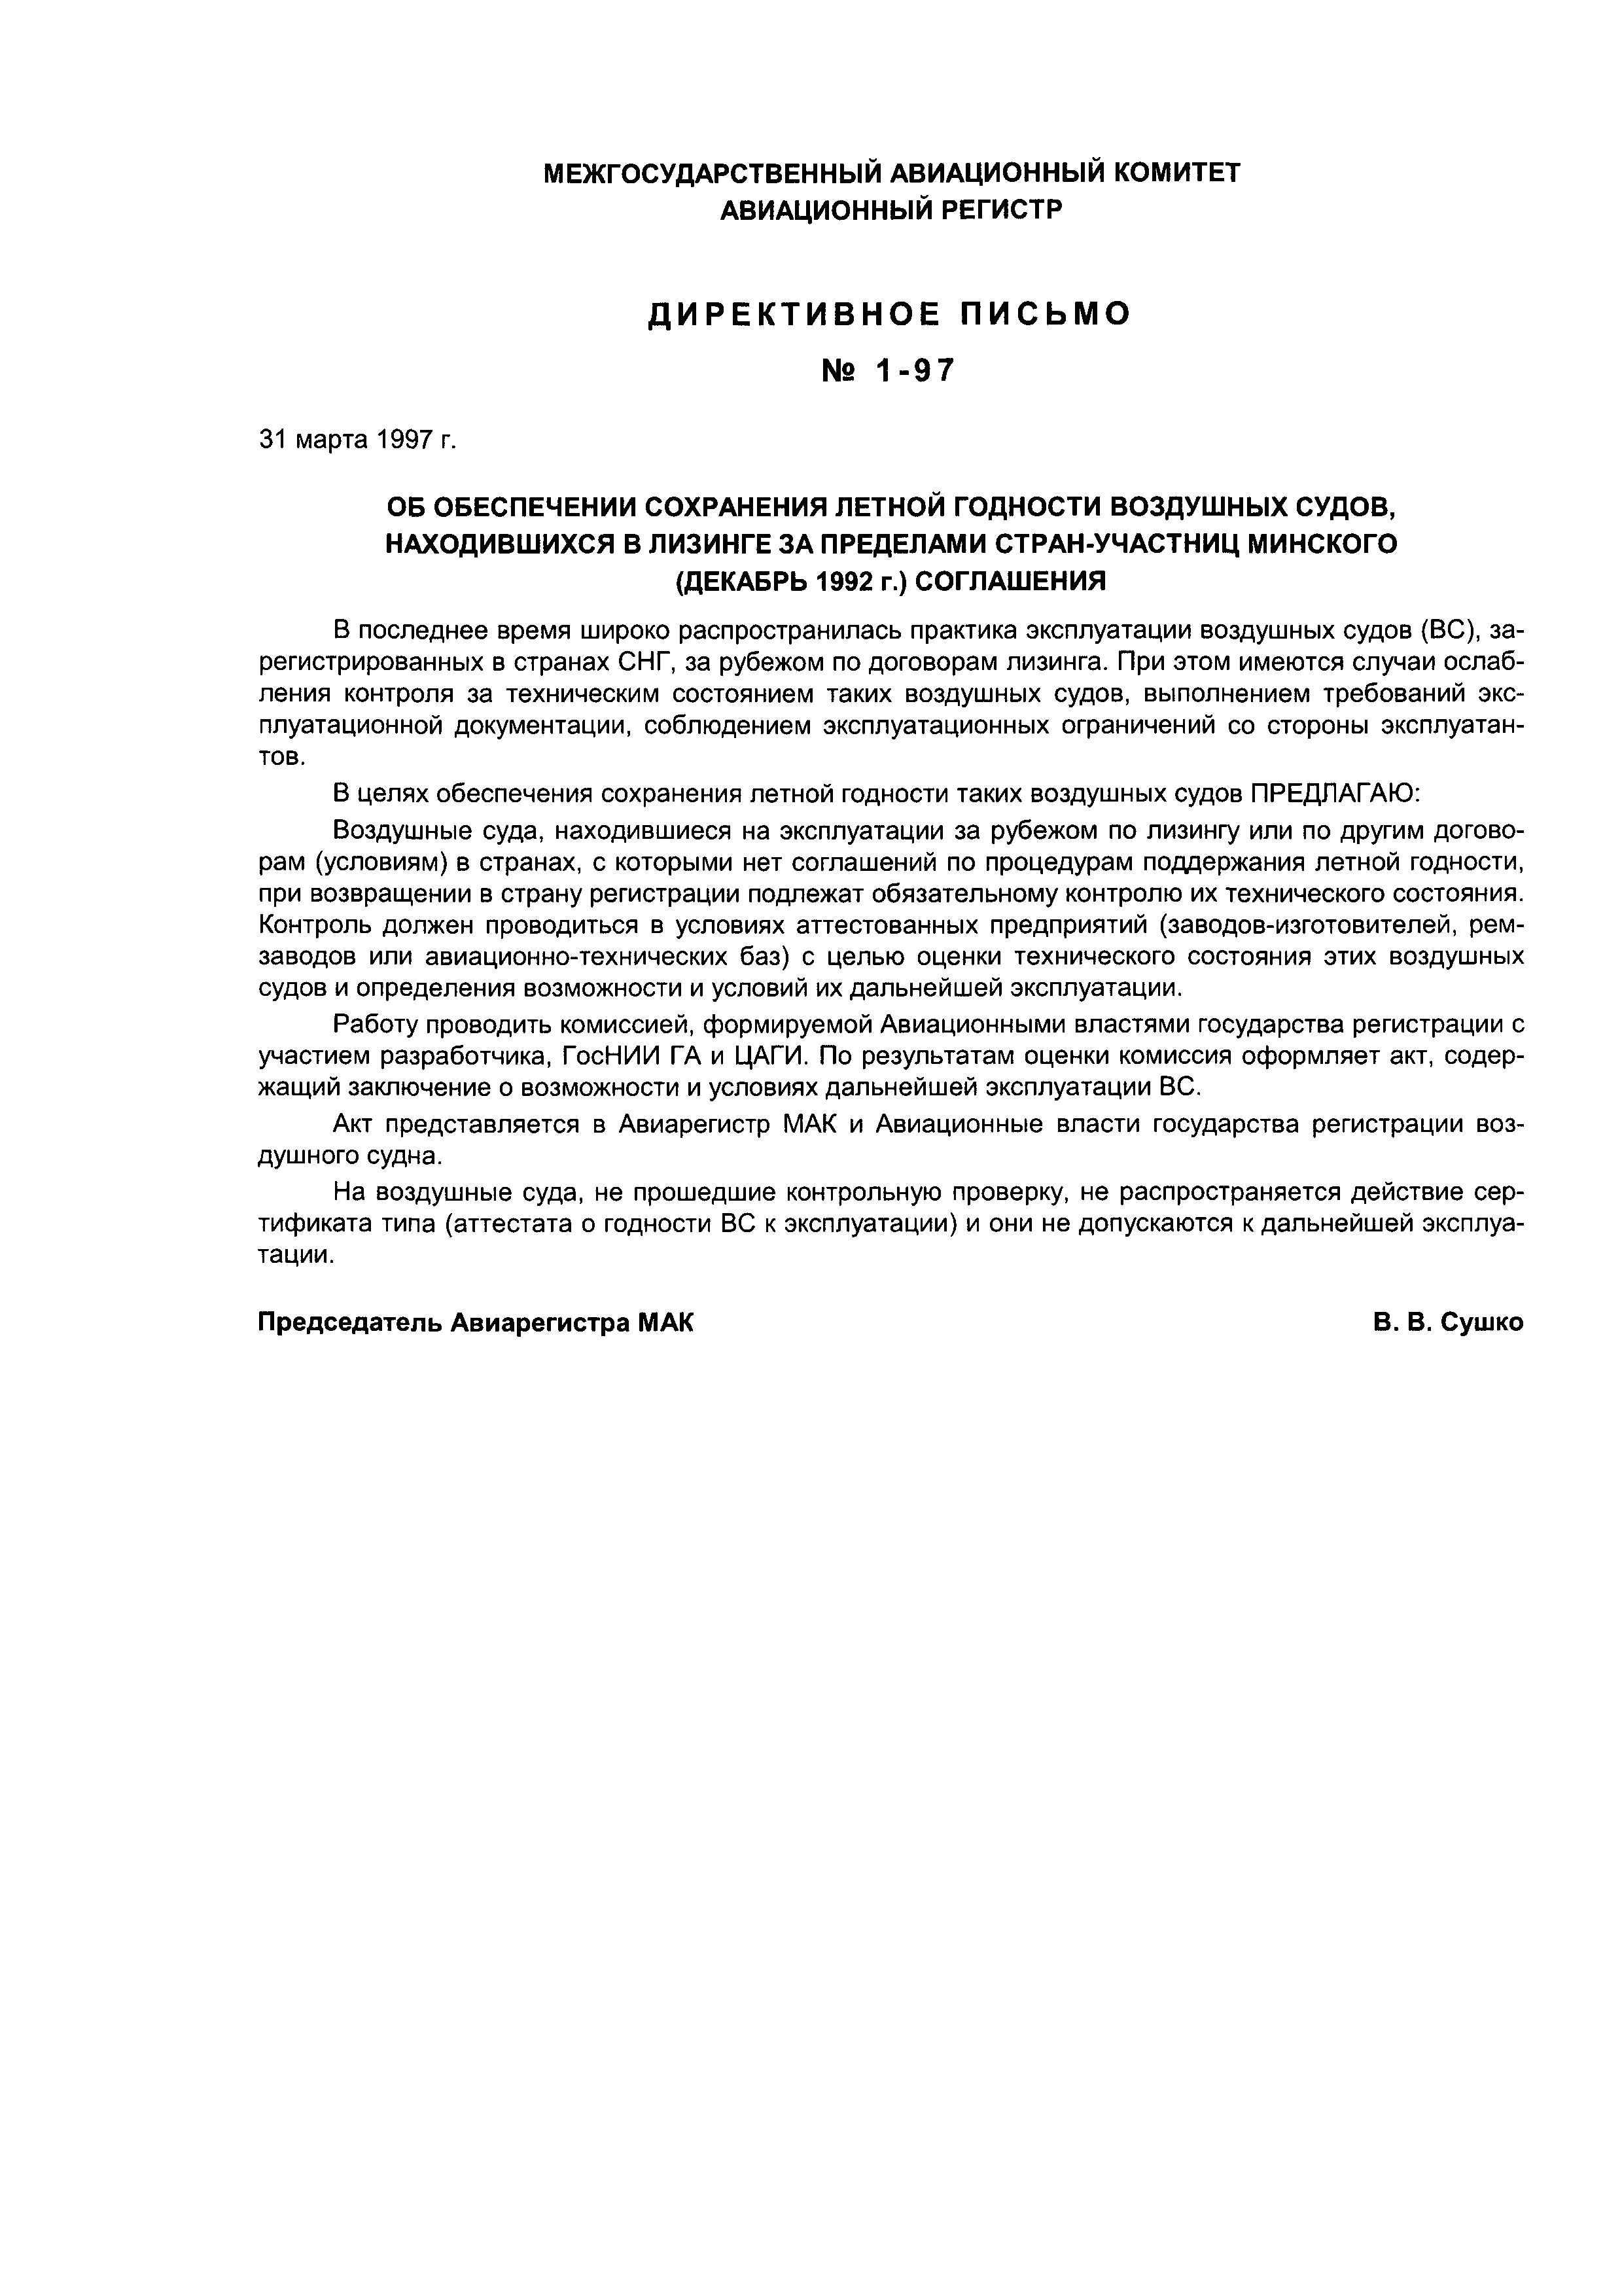 Директивное письмо 1-97